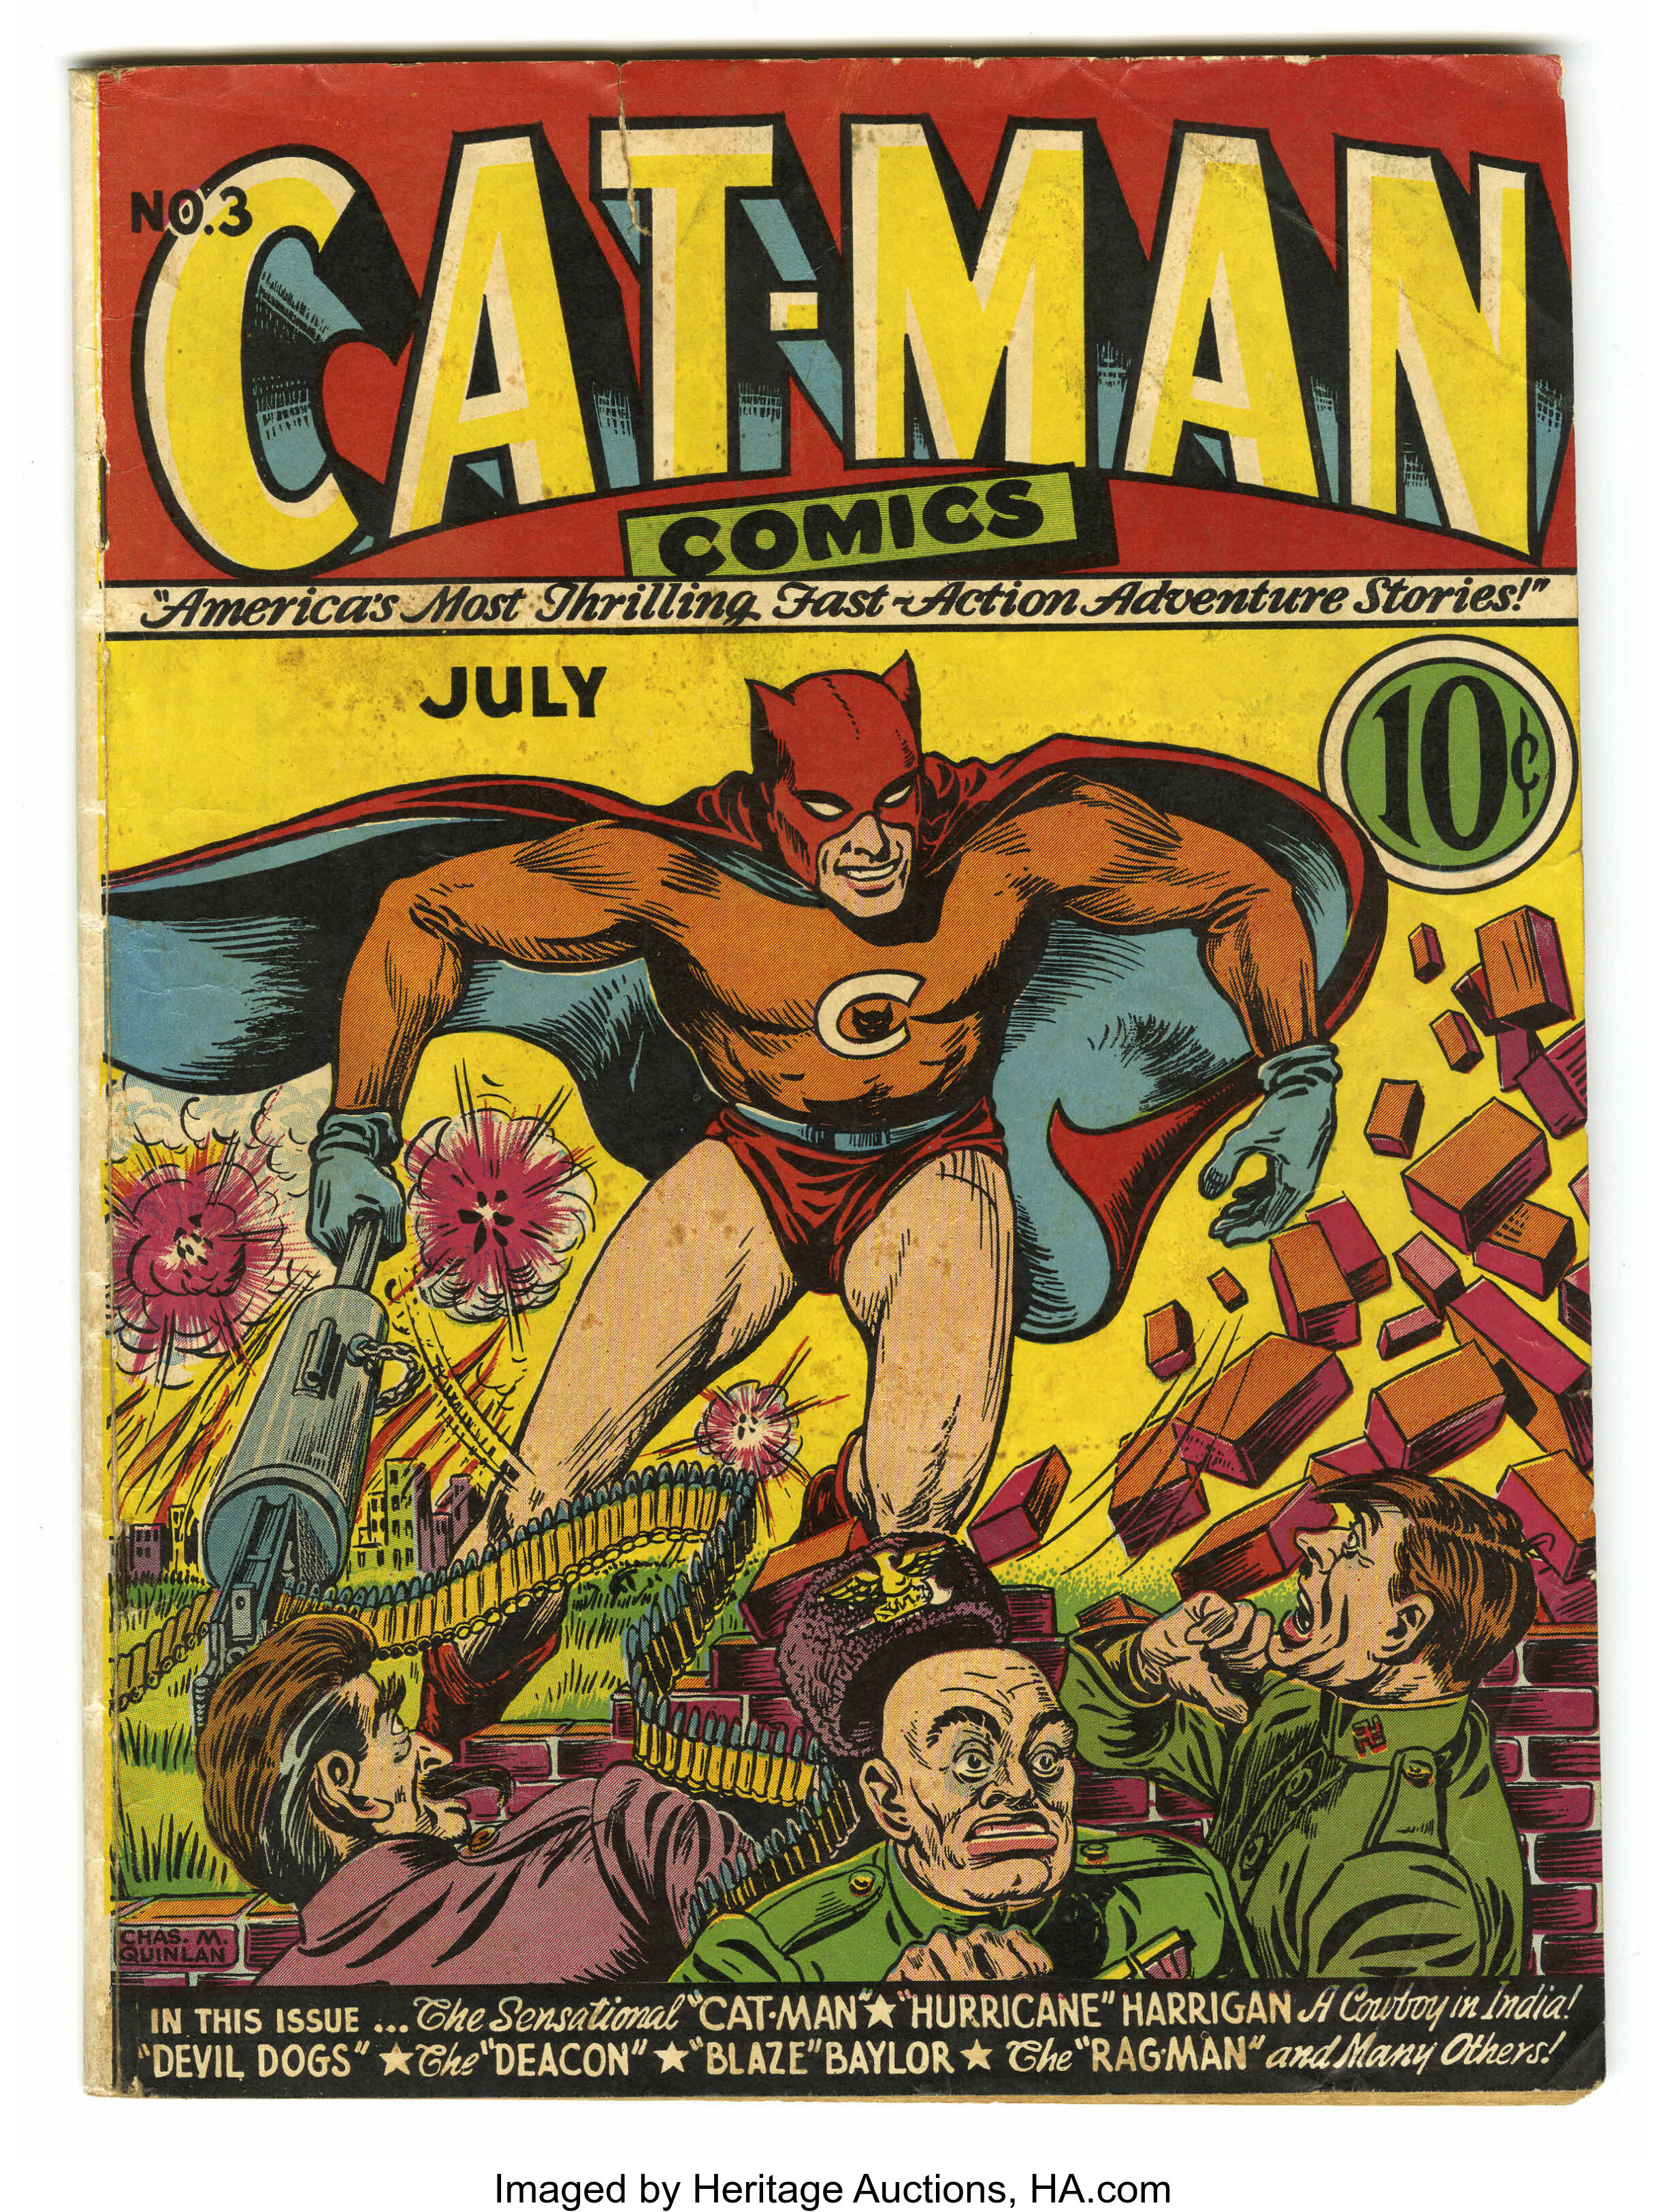 Cat-Man Comics Vol.10 1940's Superhero Comic Cover | Art Print